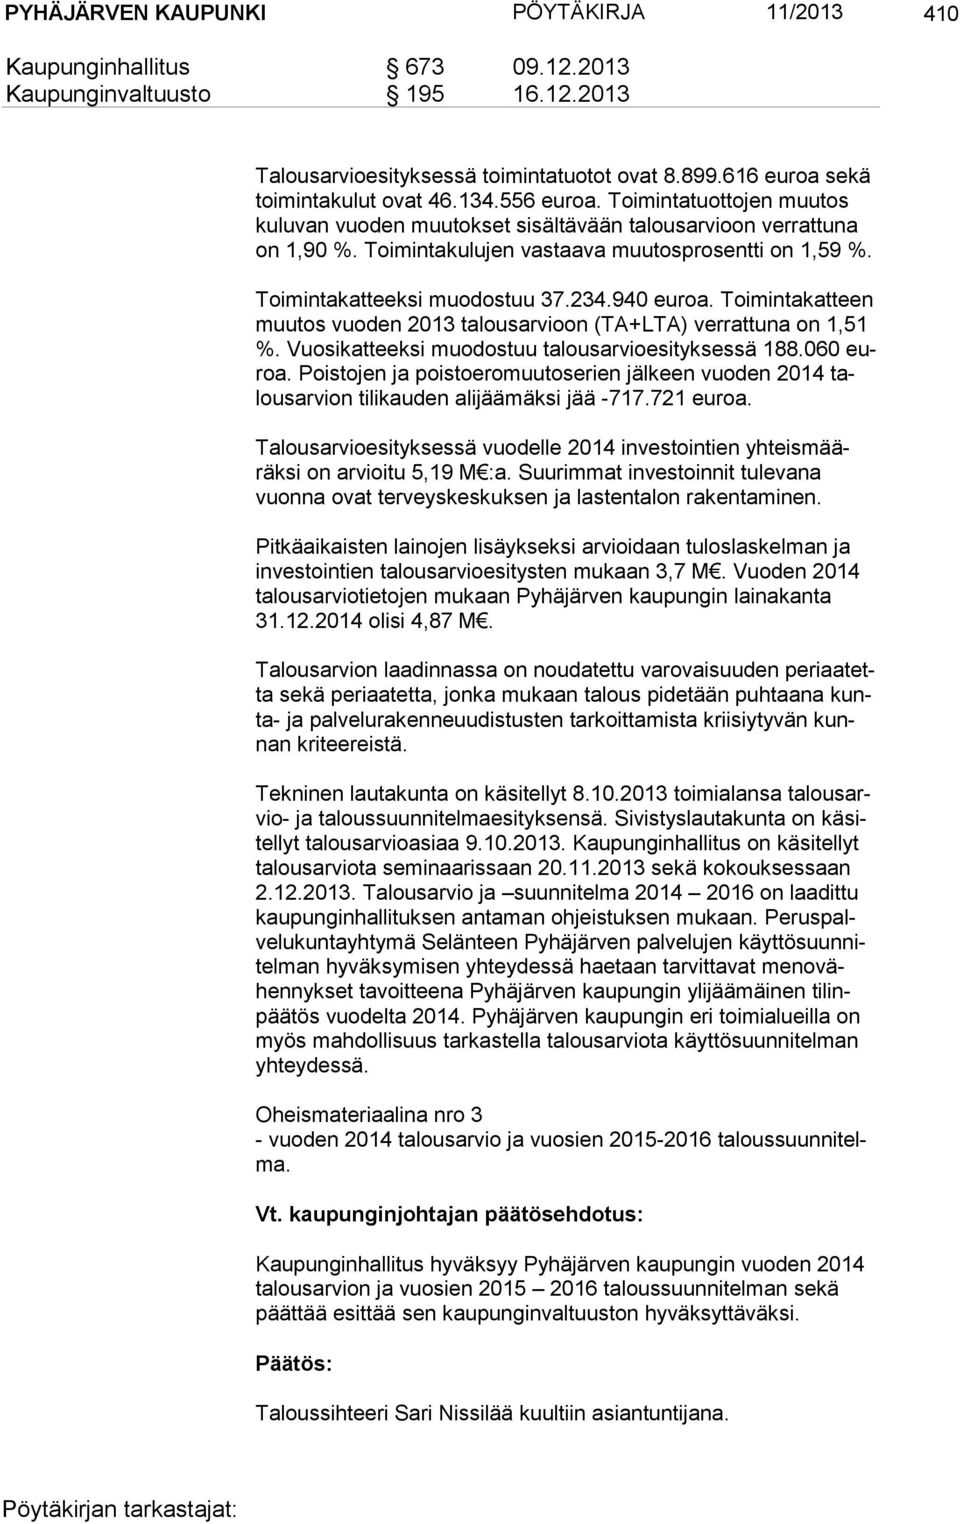 234.940 euroa. Toimintakatteen muu tos vuoden 2013 talousarvioon (TA+LTA) verrattuna on 1,51 %. Vuosikatteeksi muodostuu talousarvioesityksessä 188.060 euroa.